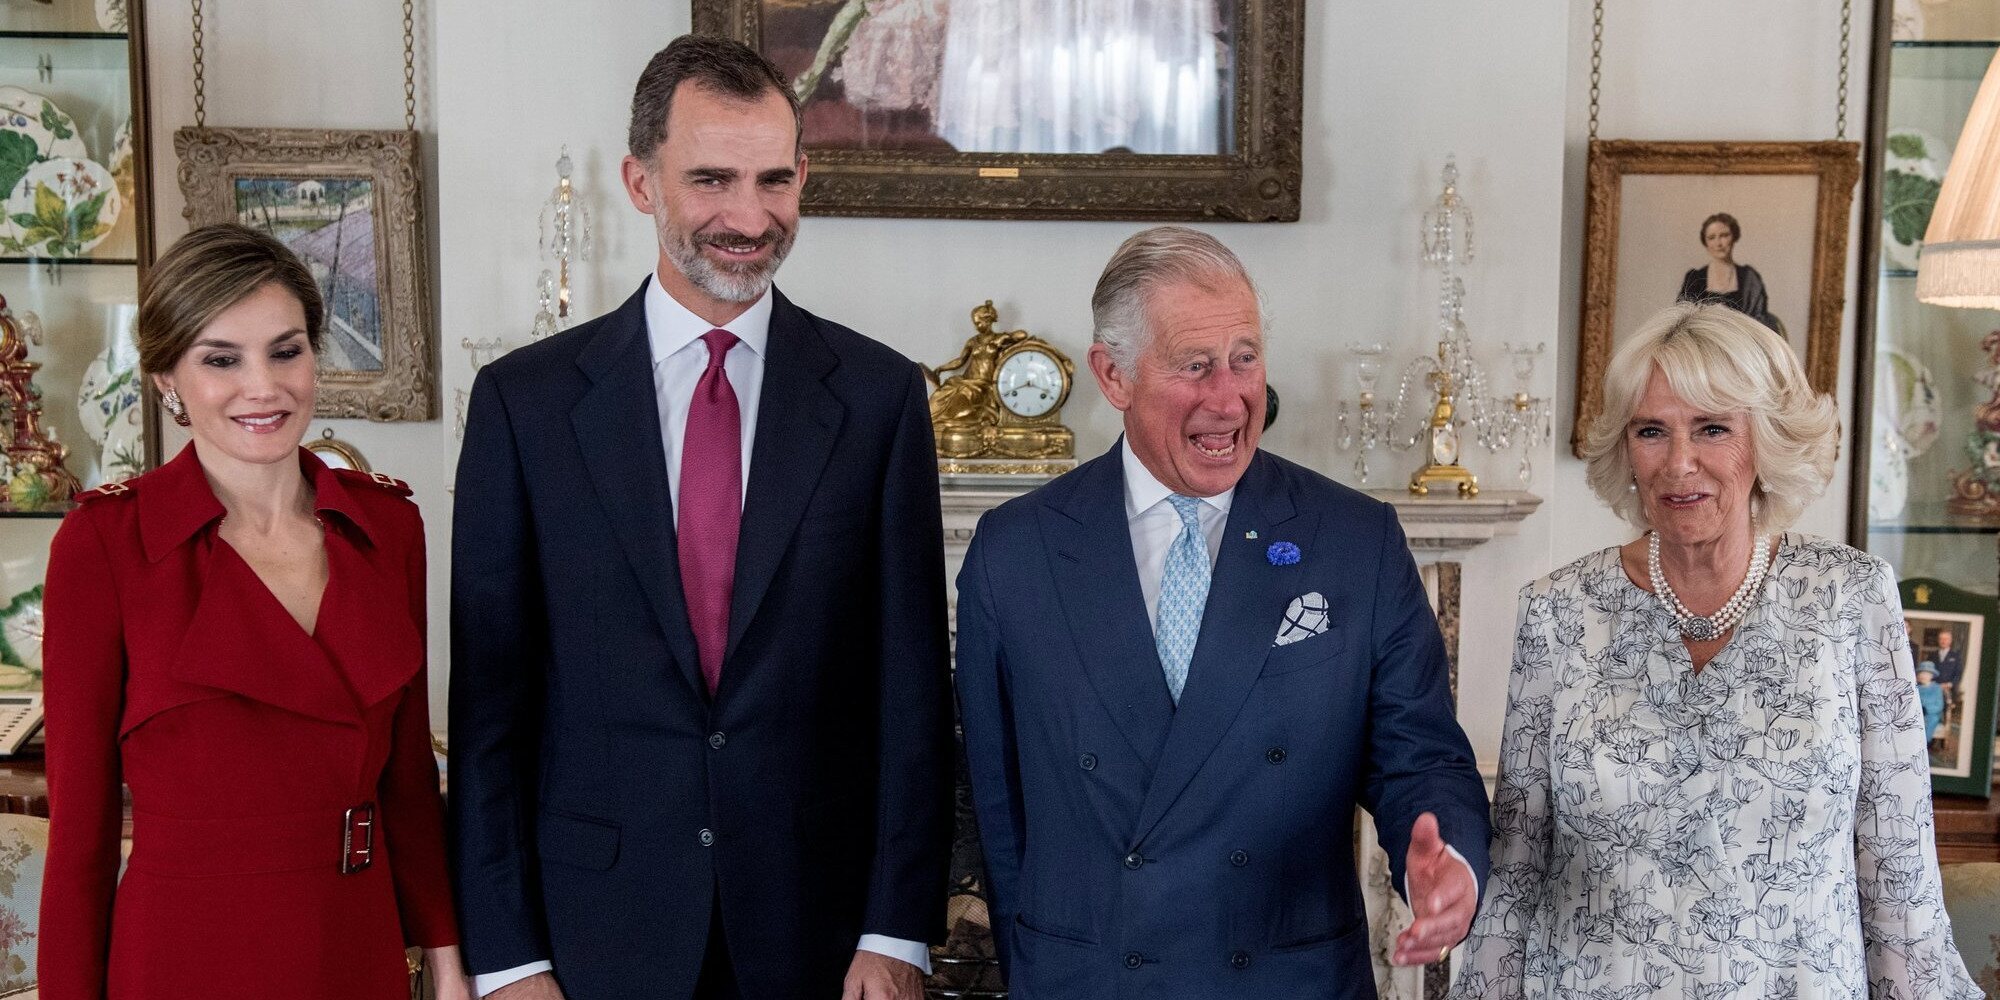 El Rey Felipe VI desea un próspero y fructífero reinado a Carlos III tras su proclamación real